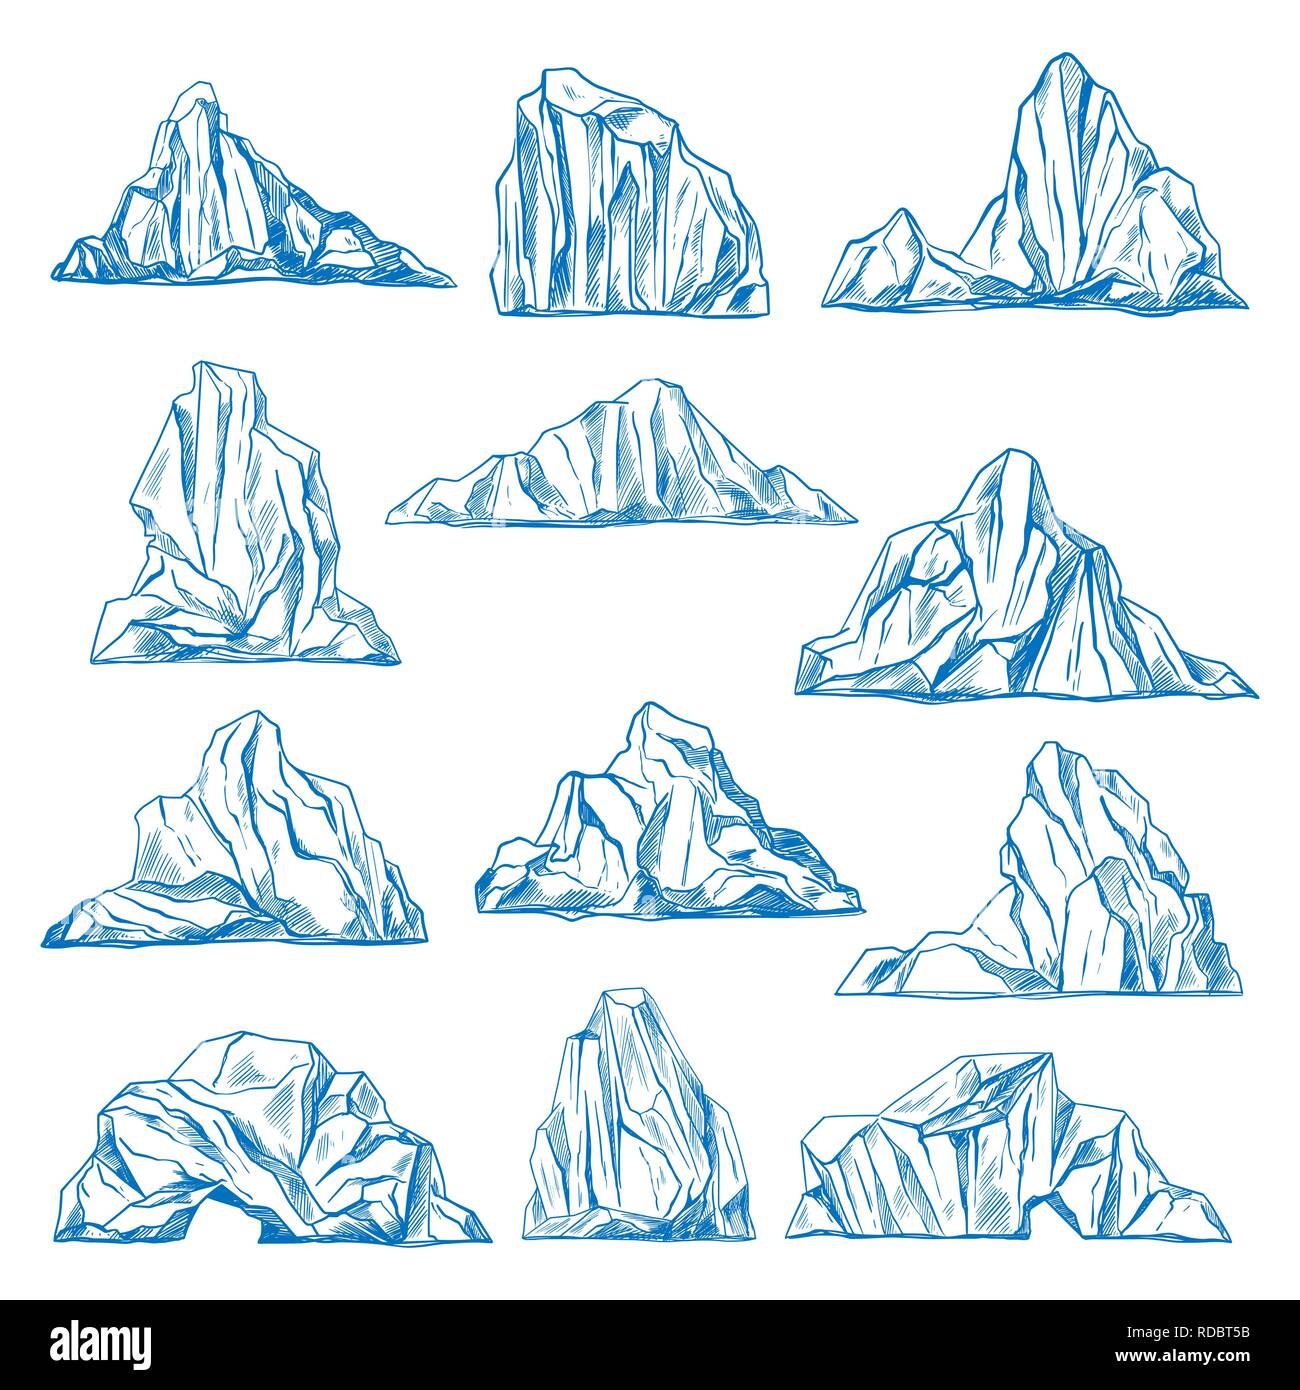 Iceberg schizzo o disegnati a mano sulle montagne. Illustrazione Vettoriale